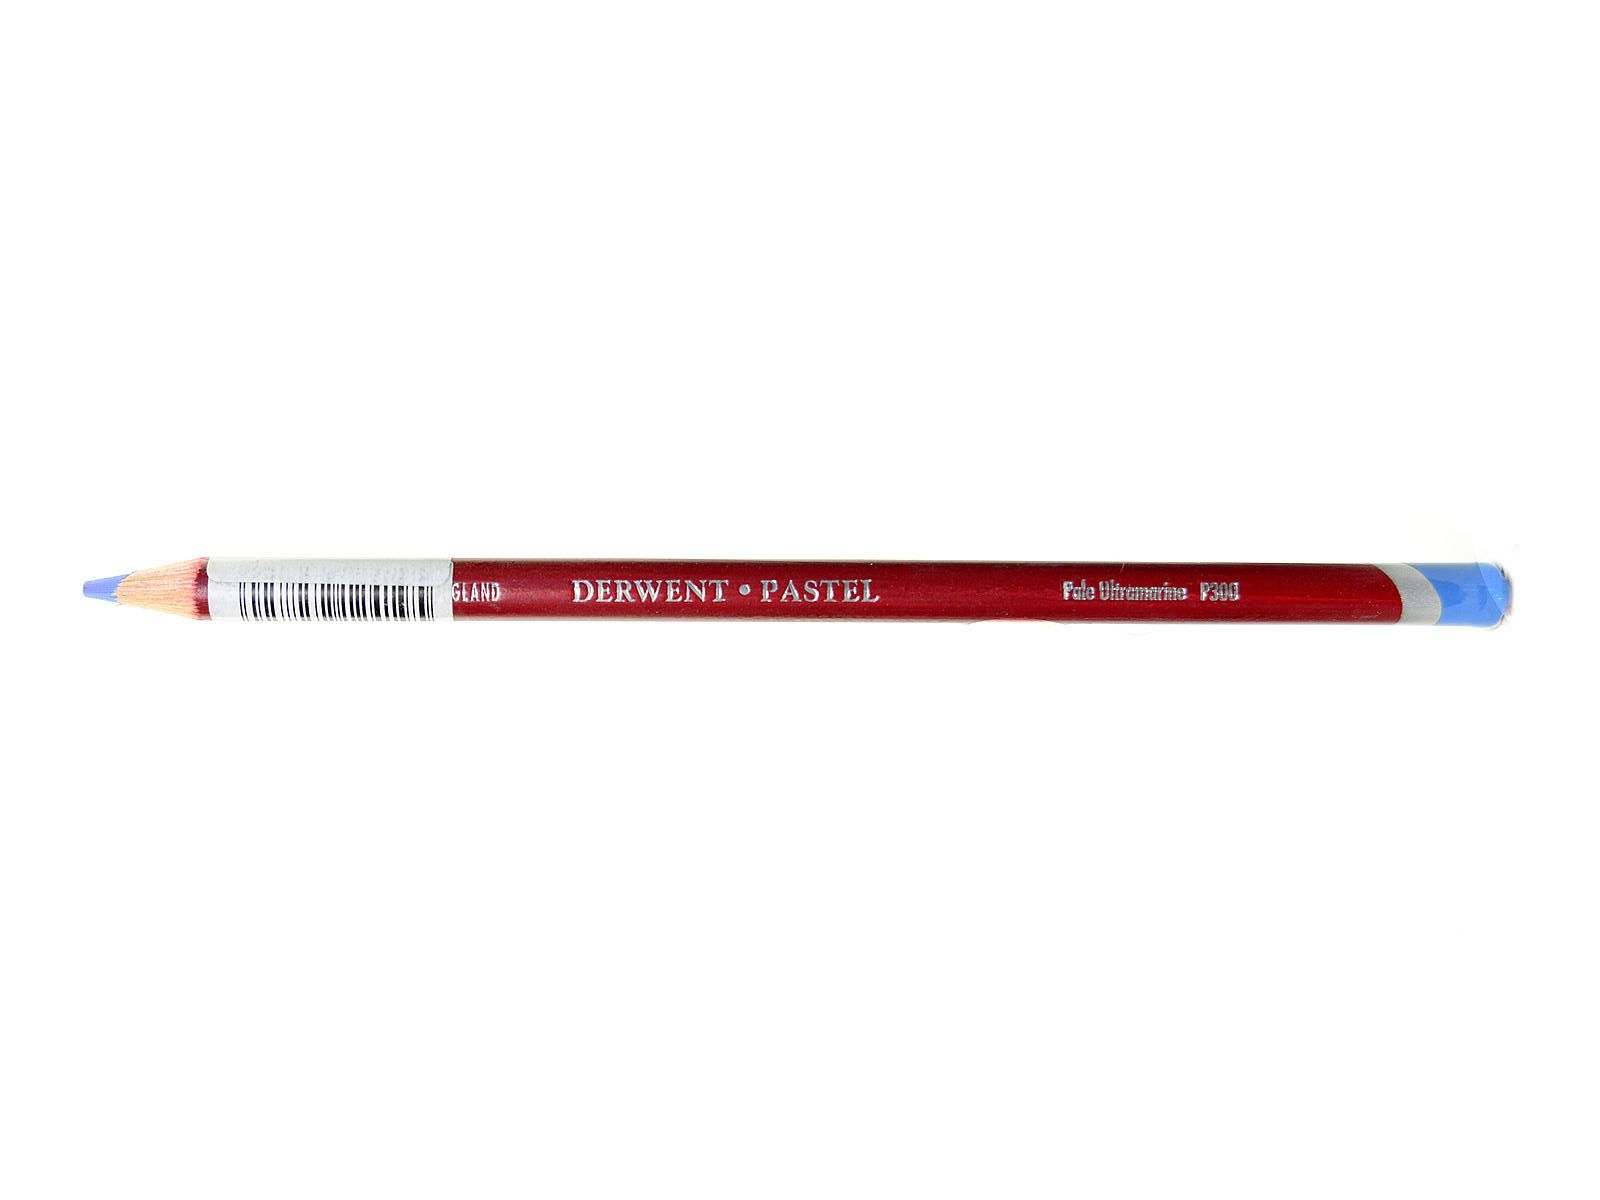 Derwent Pastel Pencil - P300 Pale Ultramarine